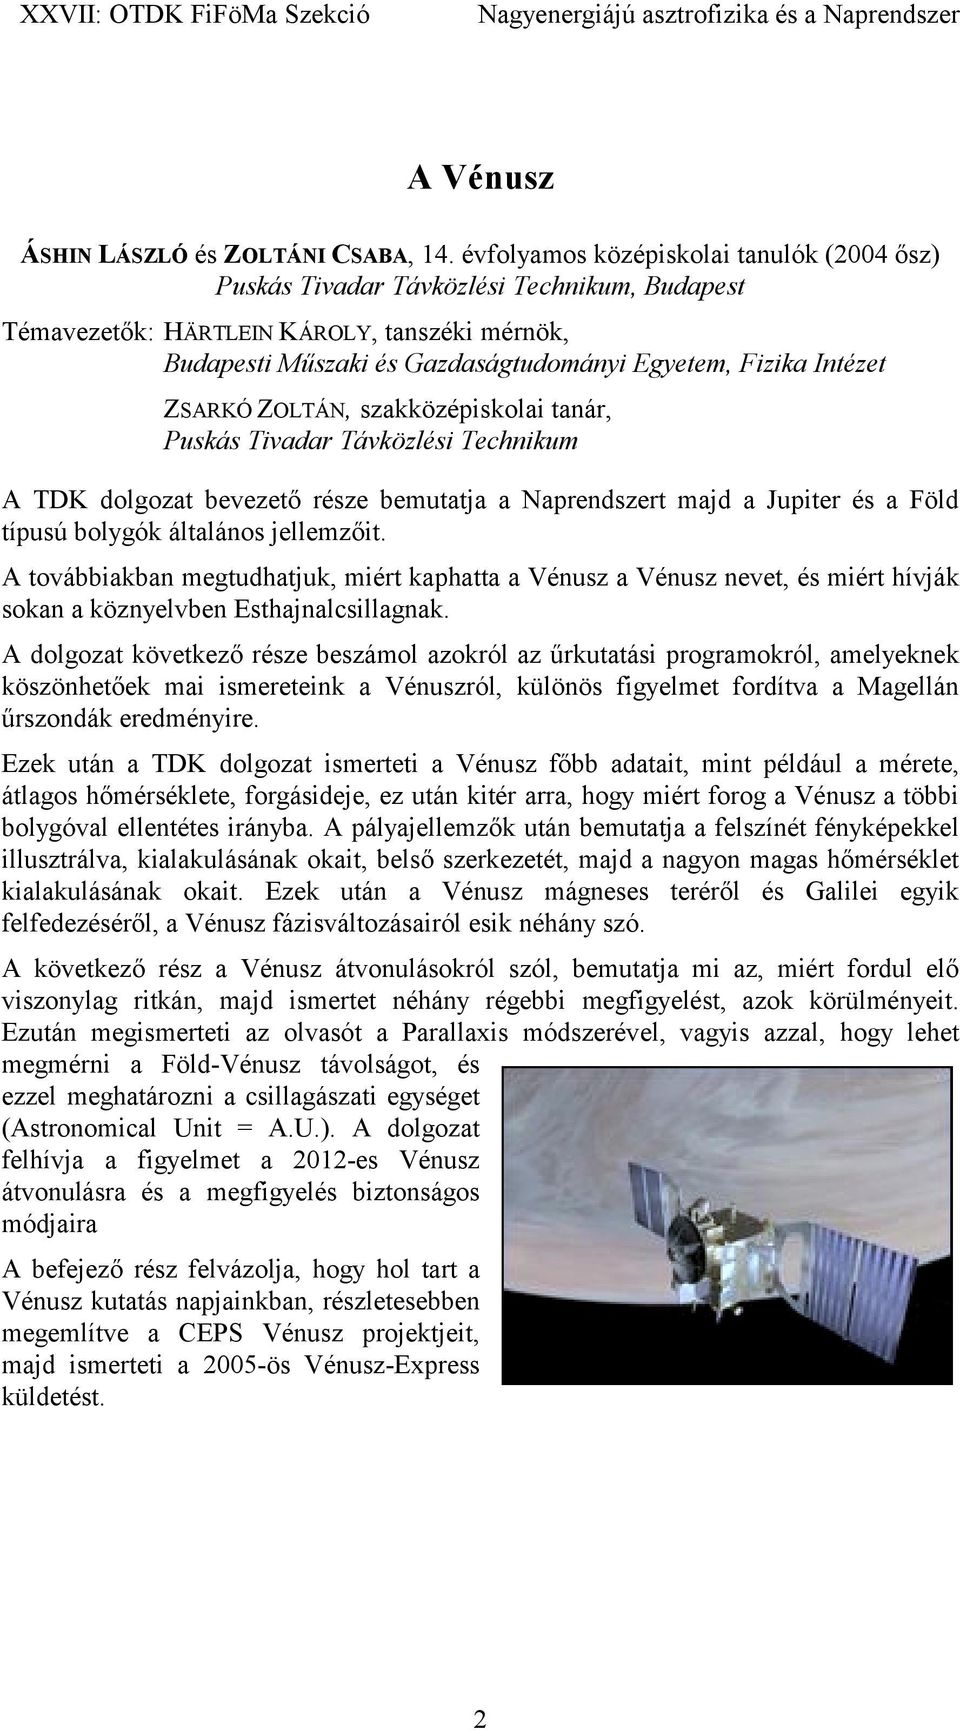 ZSARKÓ ZOLTÁN, szakközépiskolai tanár, Puskás Tivadar Távközlési Technikum A TDK dolgozat bevezető része bemutatja a Naprendszert majd a Jupiter és a Föld típusú bolygók általános jellemzőit.